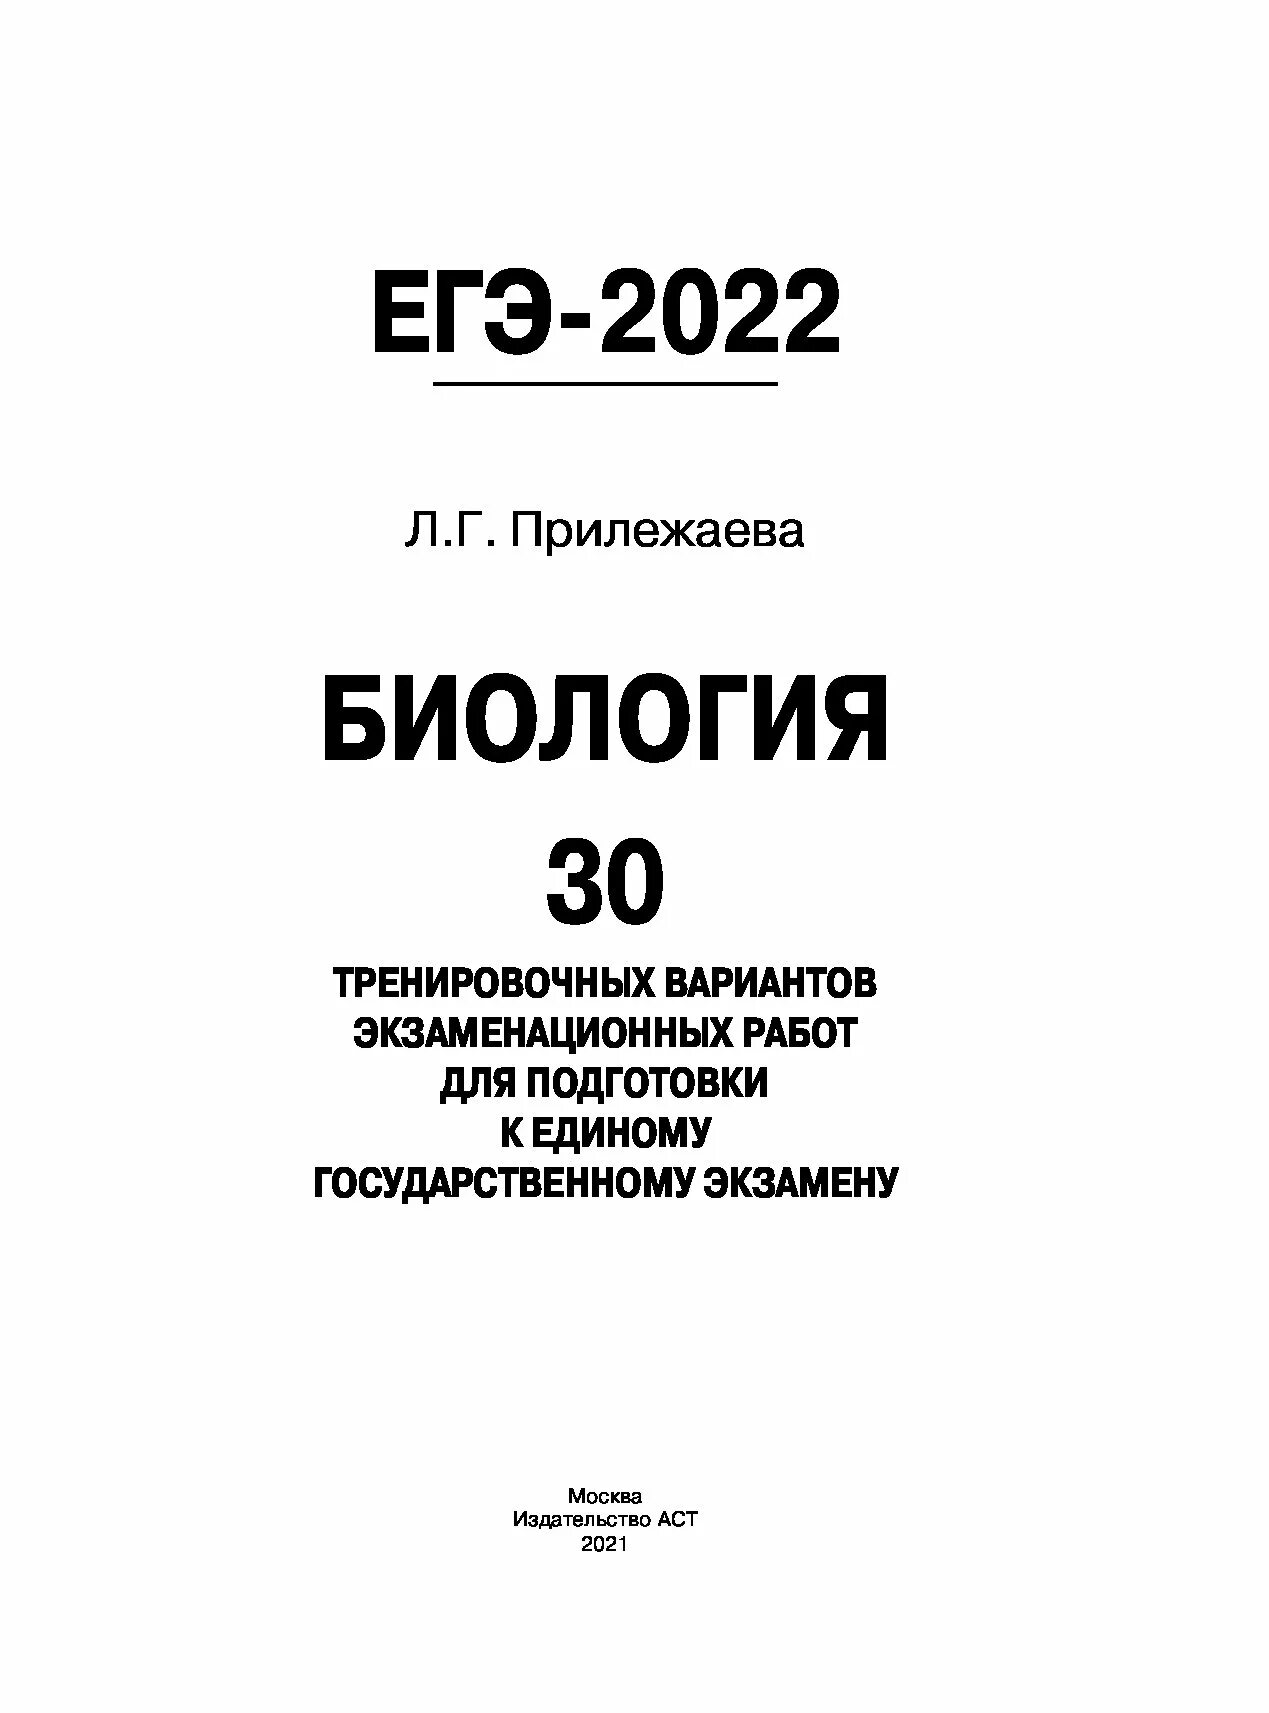 Сборник ответов биология 2023. Биология (ЕГЭ). Биология ЕГЭ 2021. ЕГЭ биология 2022. ЕГЭ 2020 биология.